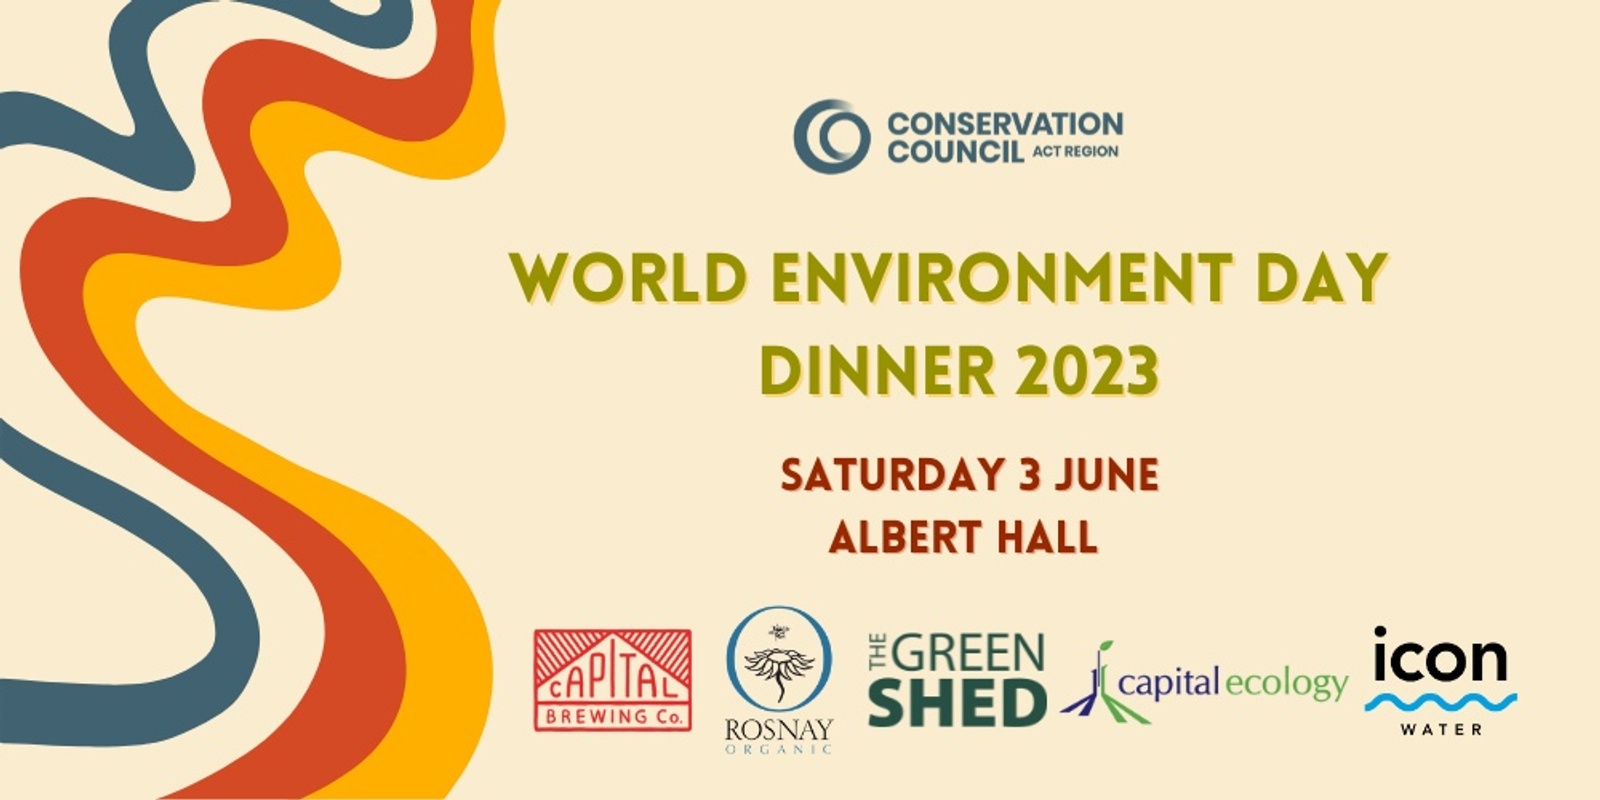 World Environment Day Dinner 2023